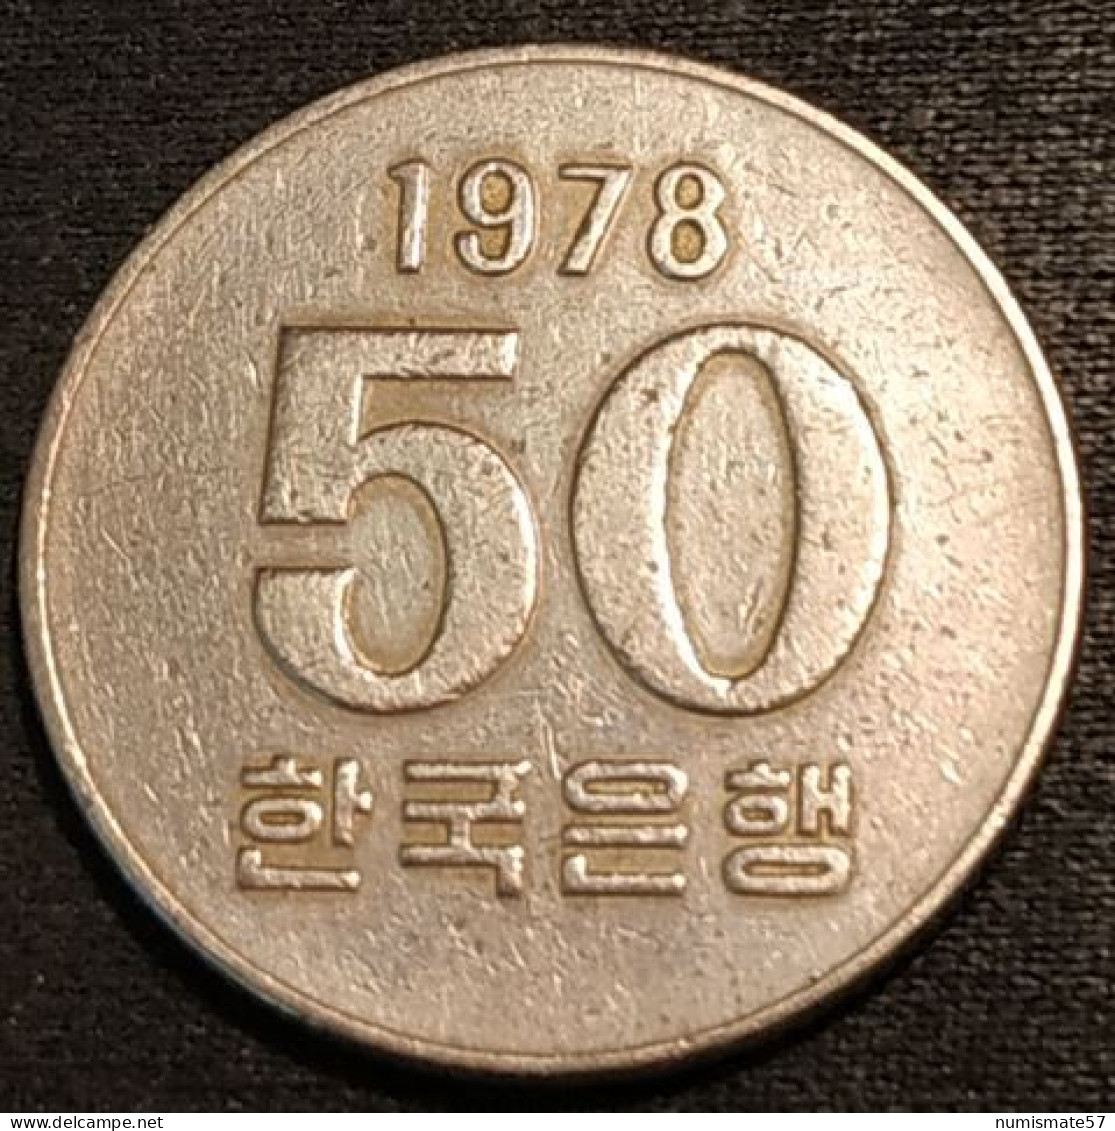 COREE DU SUD - SOUTH KOREA - 50 WON 1978 - KM 20 - Coreal Del Sur